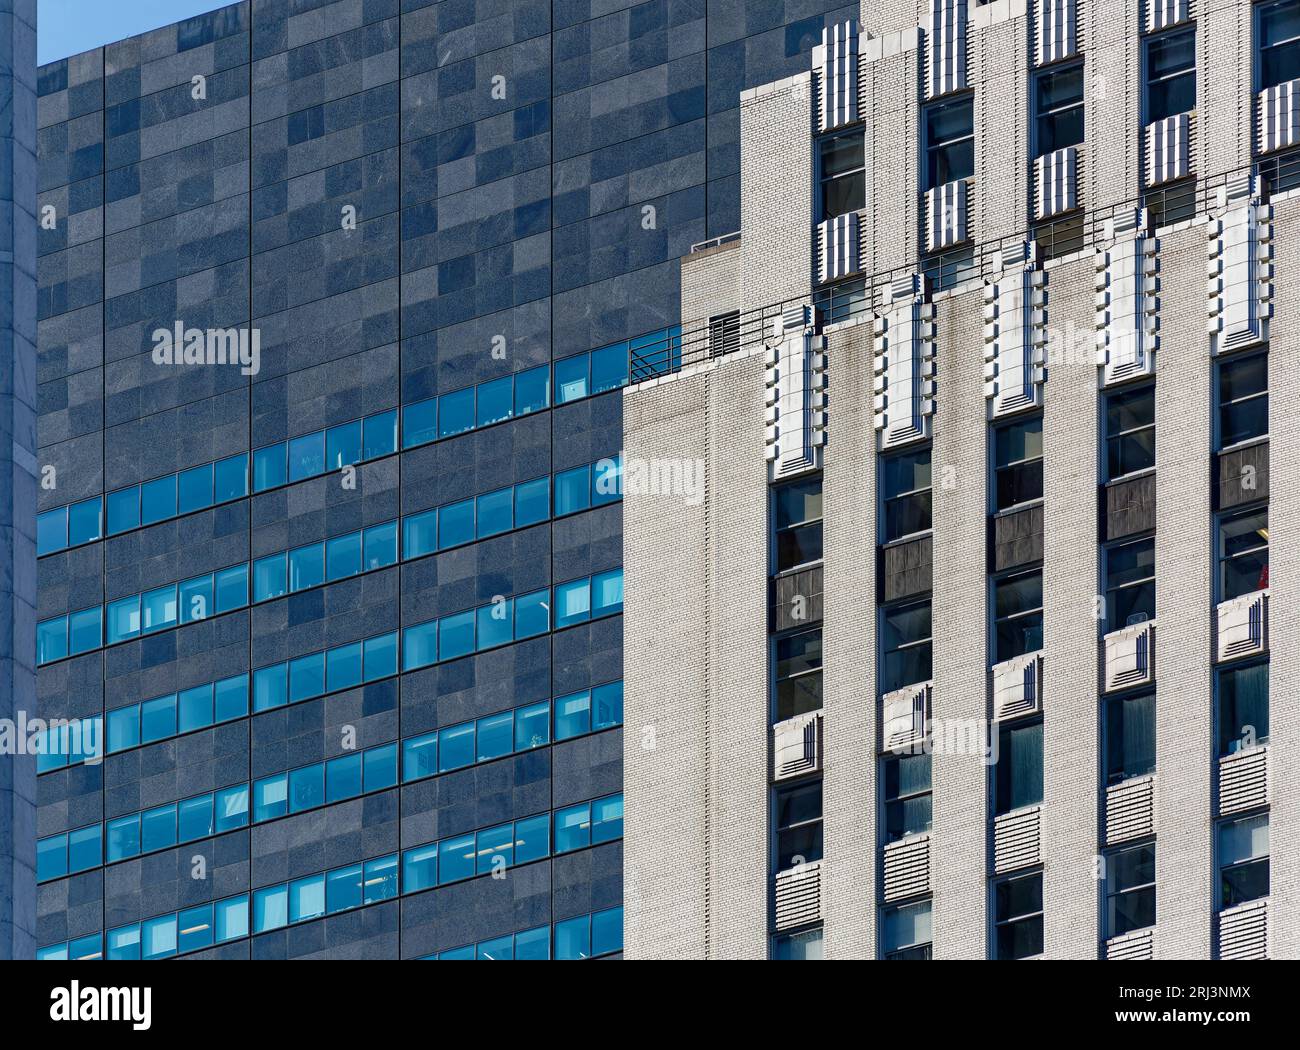 Die Fensterbänder brechen die schwarz-graue Granitfassade des IBM Building auf; weiße Ziegel und Stein 745 Fifth Avenue bilden einen starken Kontrast. Stockfoto